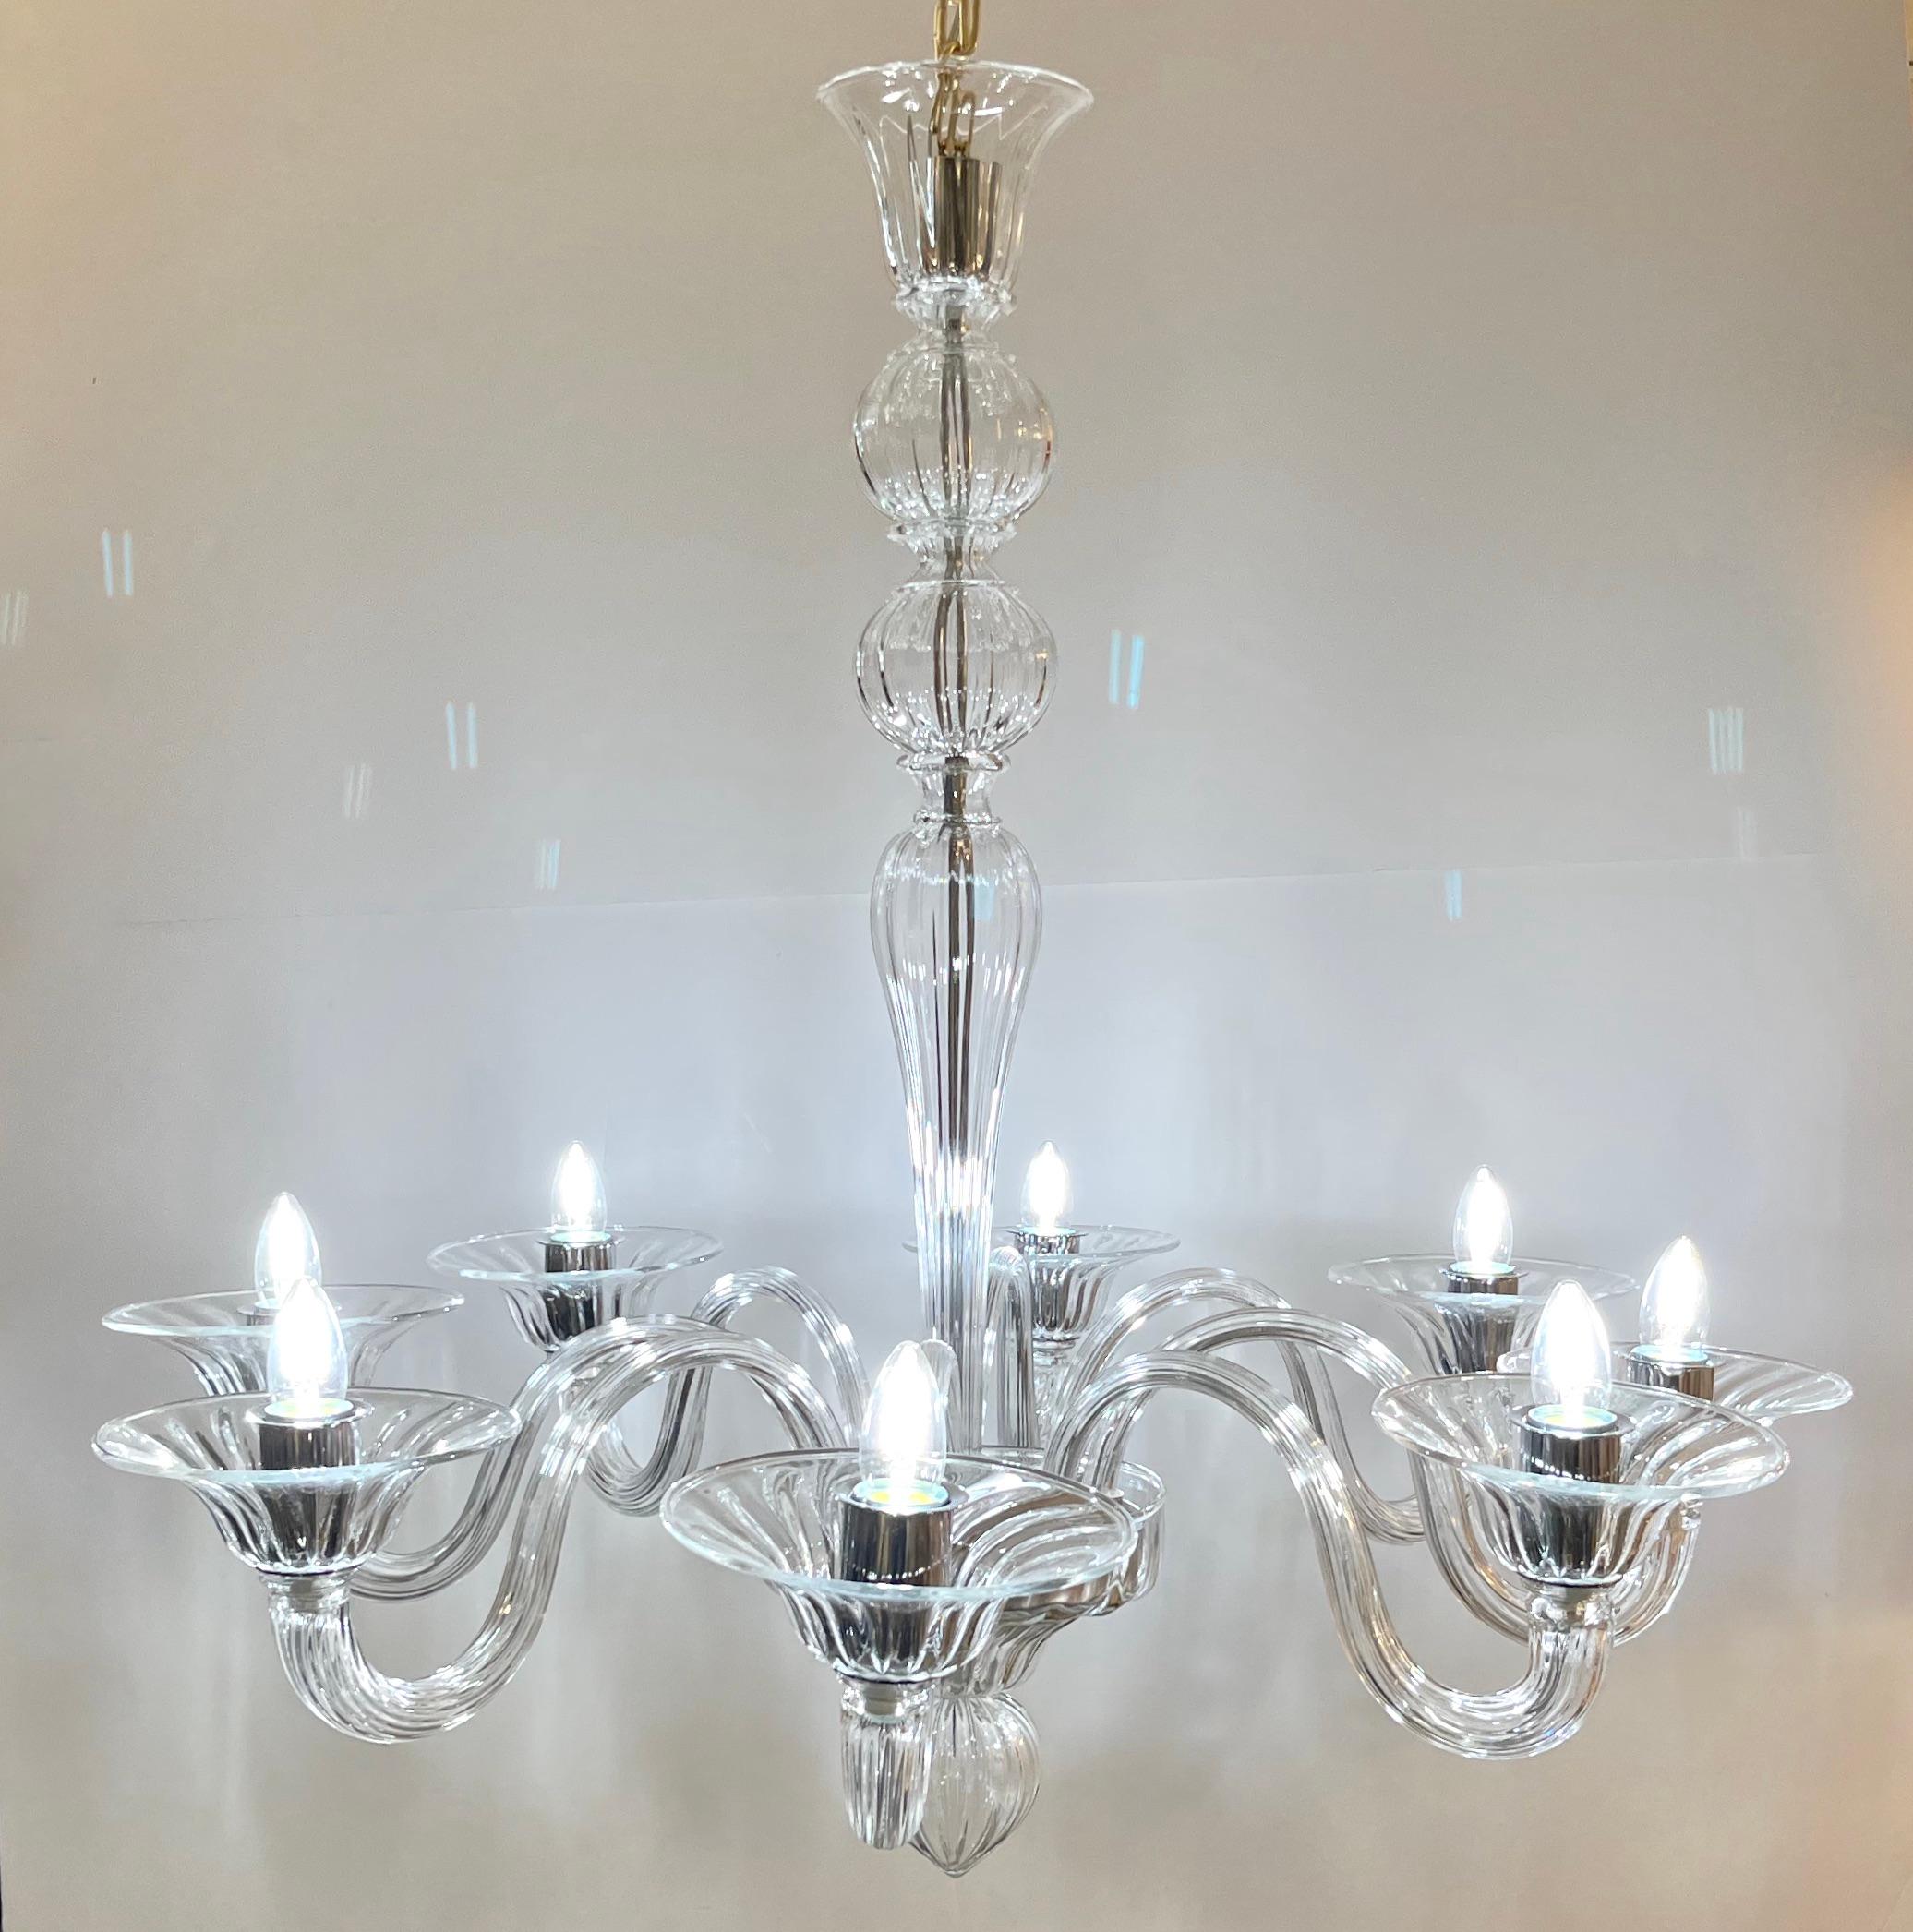 Création moderne minimaliste du lustre vénitien traditionnel, 8 lumières, en cristal soufflé artistique de Murano, entièrement fabriqué à la main en Italie.
Ce luminaire en verre de Murano se caractérise par une superbe simplicité sinueuse. Il